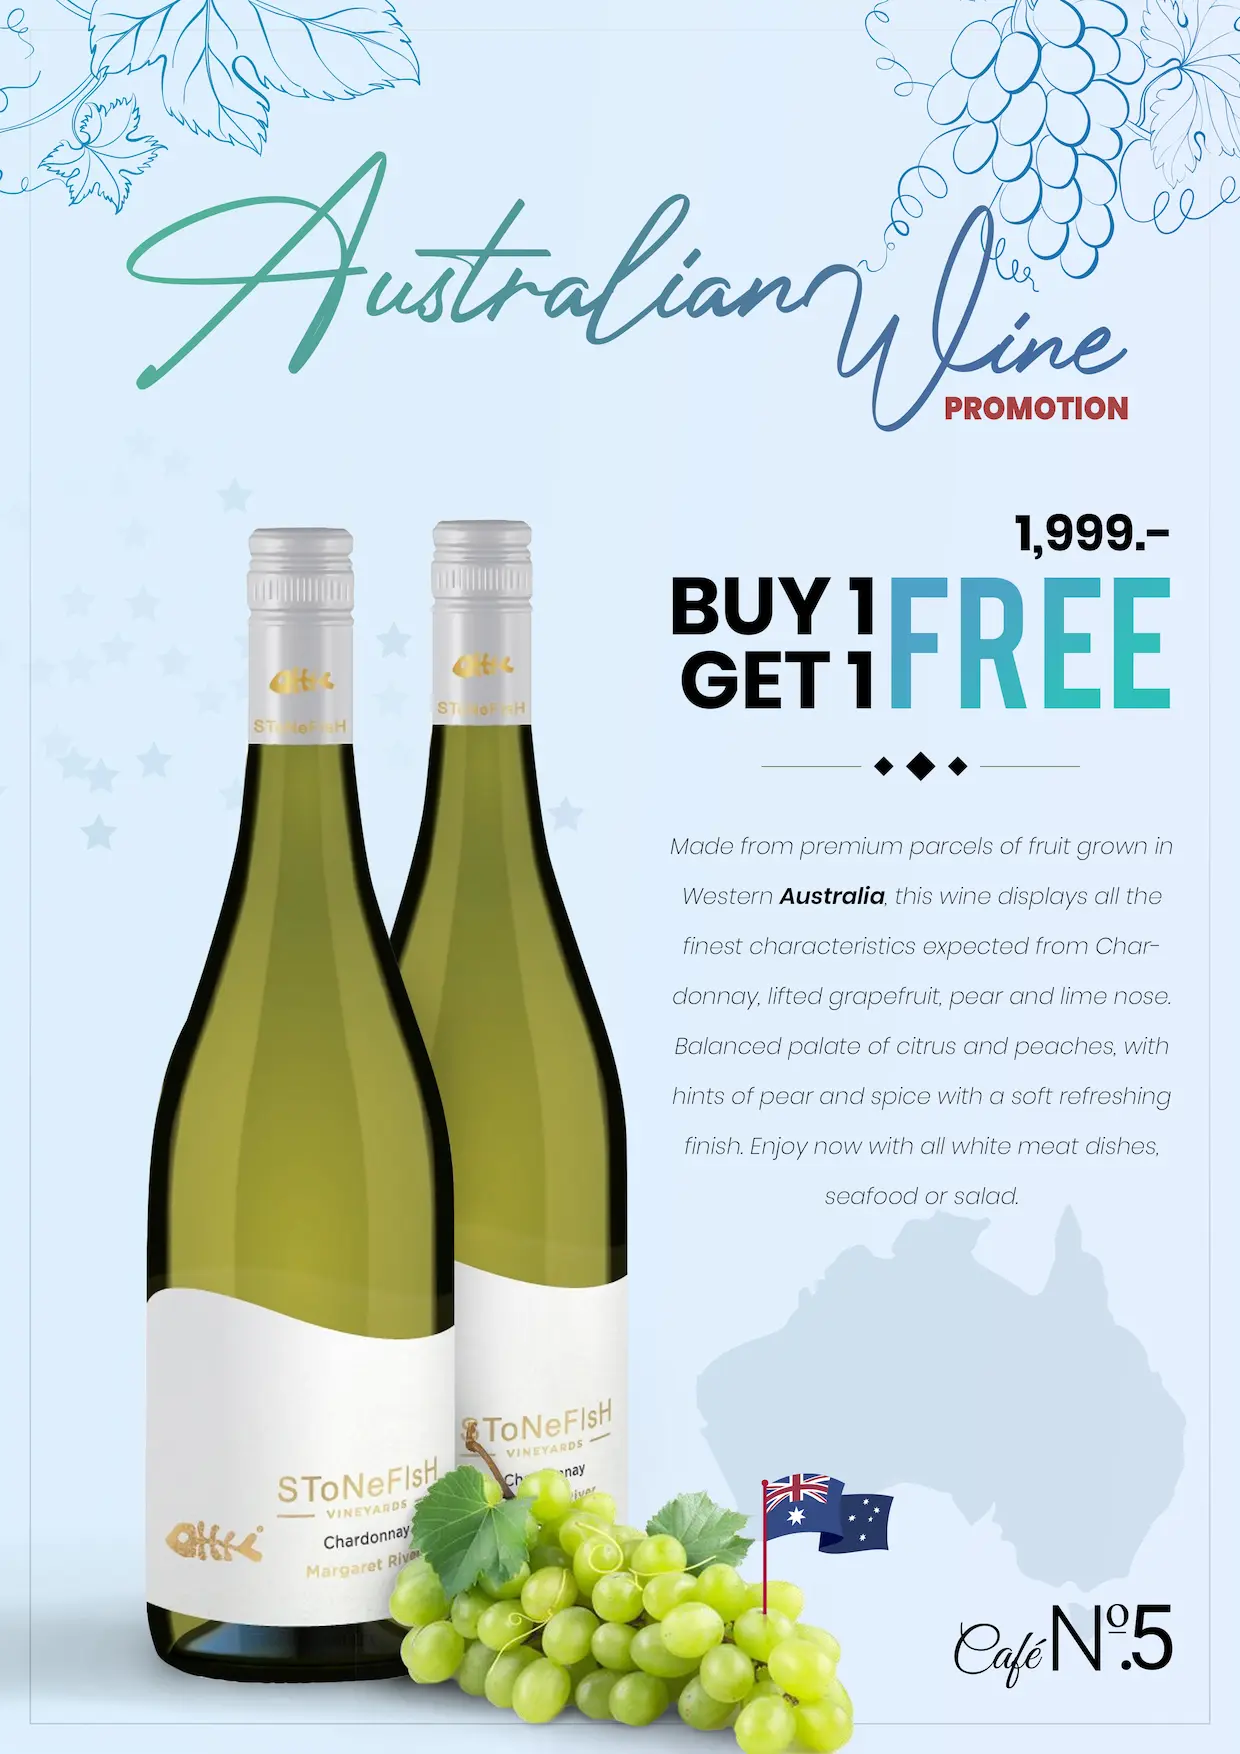 Australian Wine Promotion - Buy 1 Get 1 Free